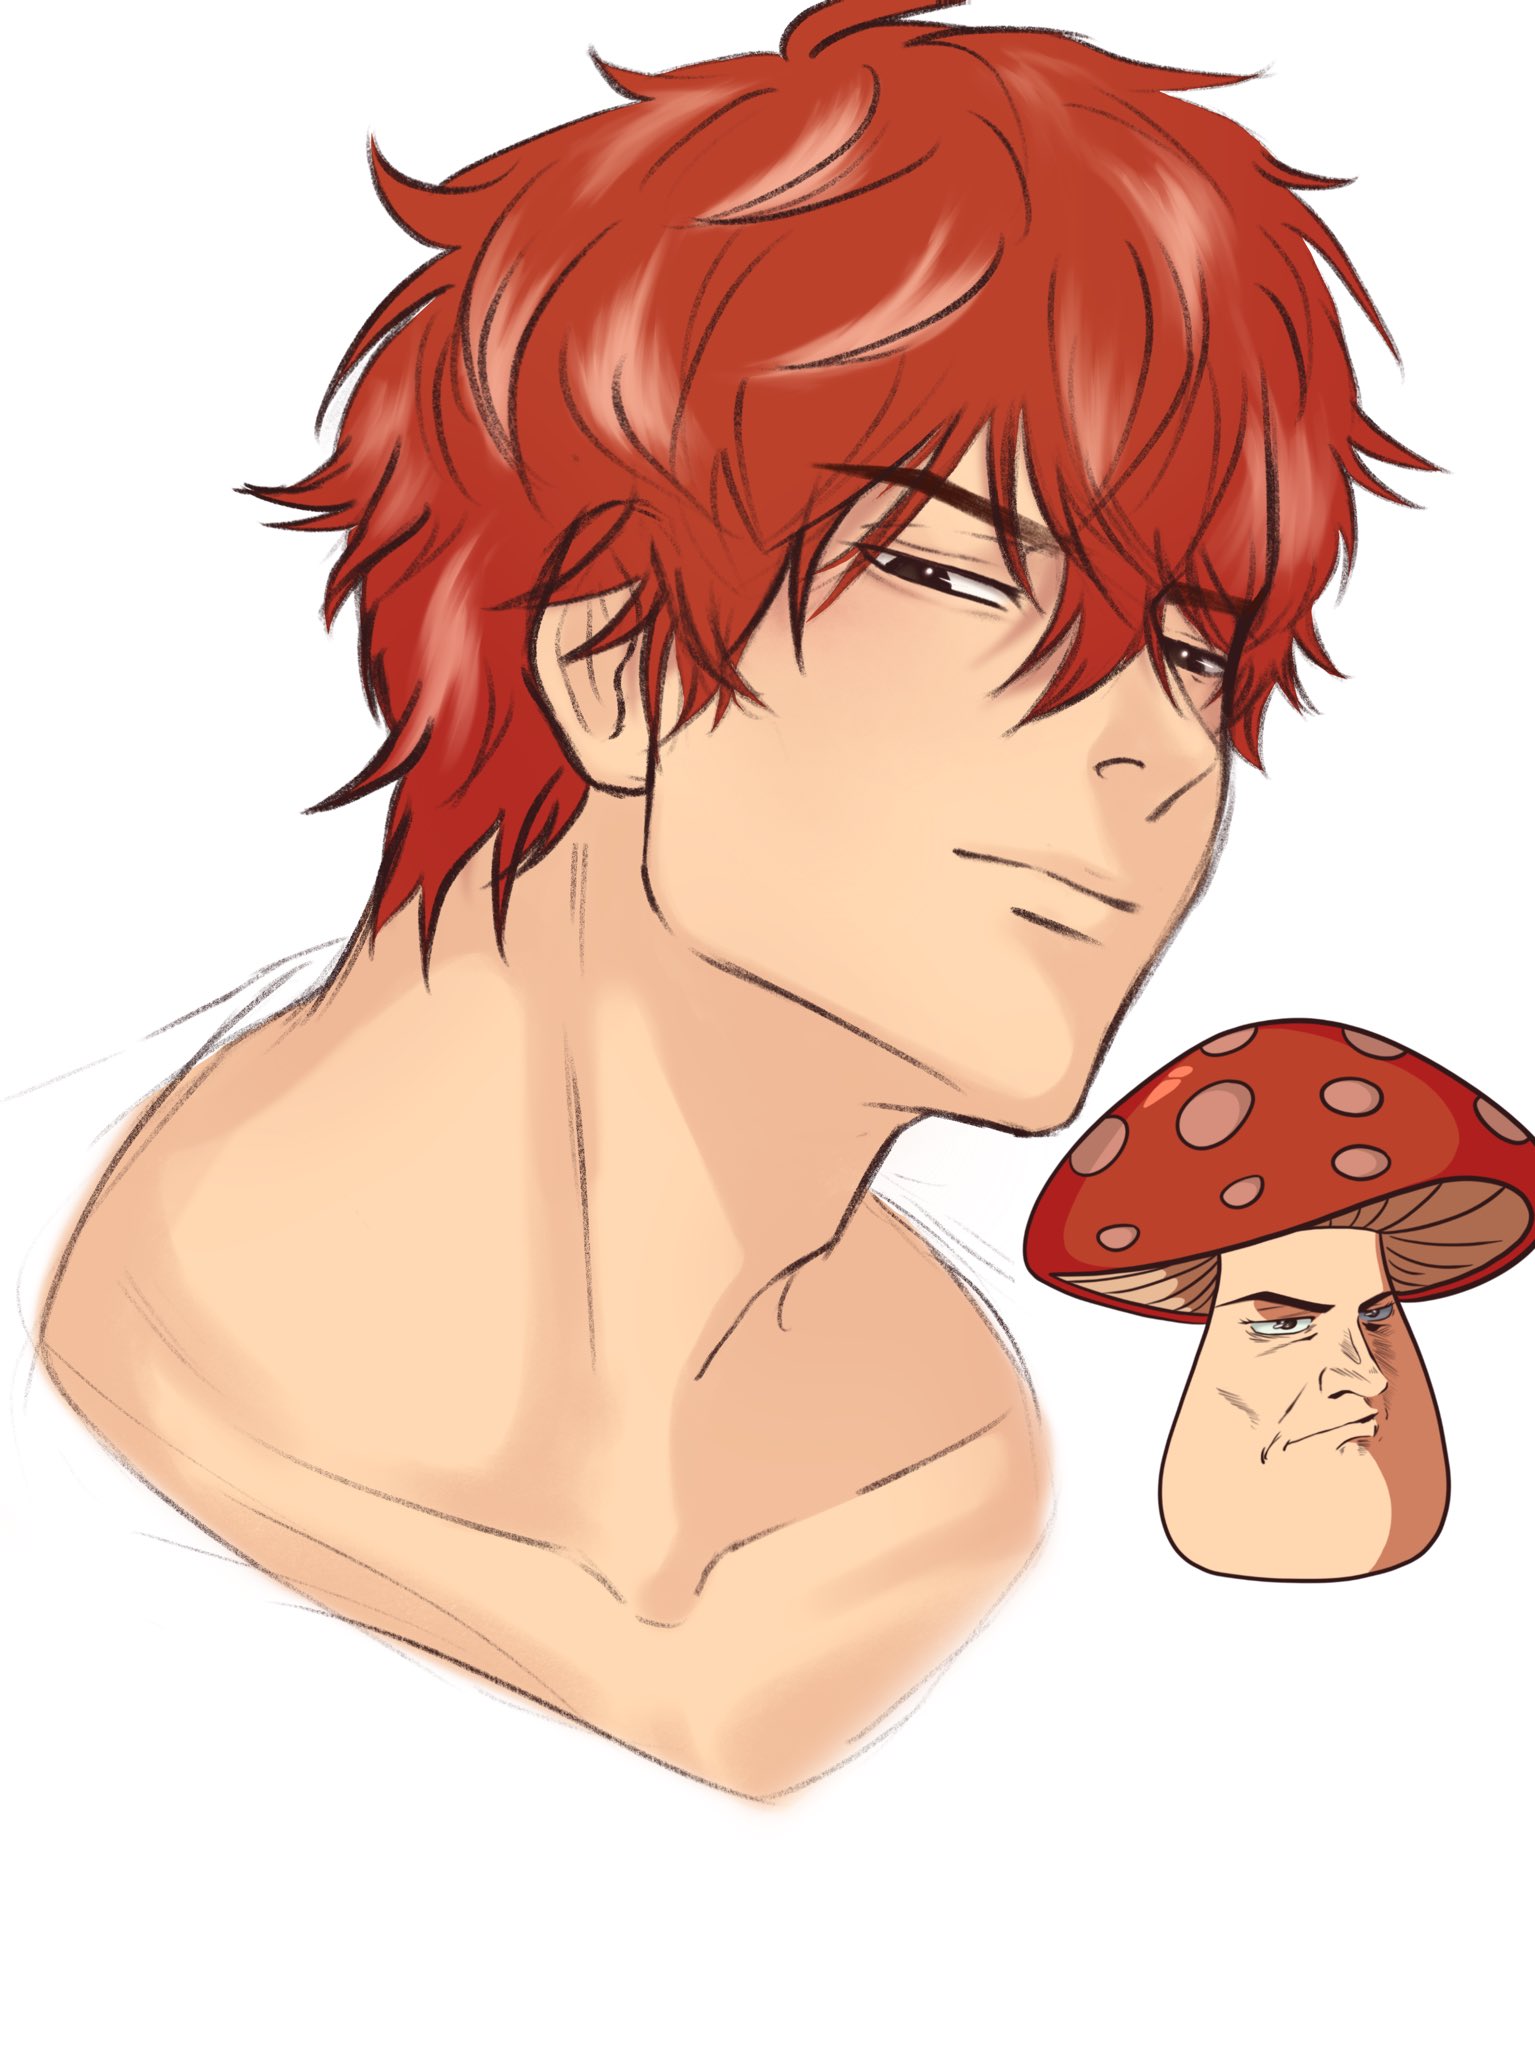 Natsuhiko mushroom | Anime, Cute anime pics, Anime pixel art